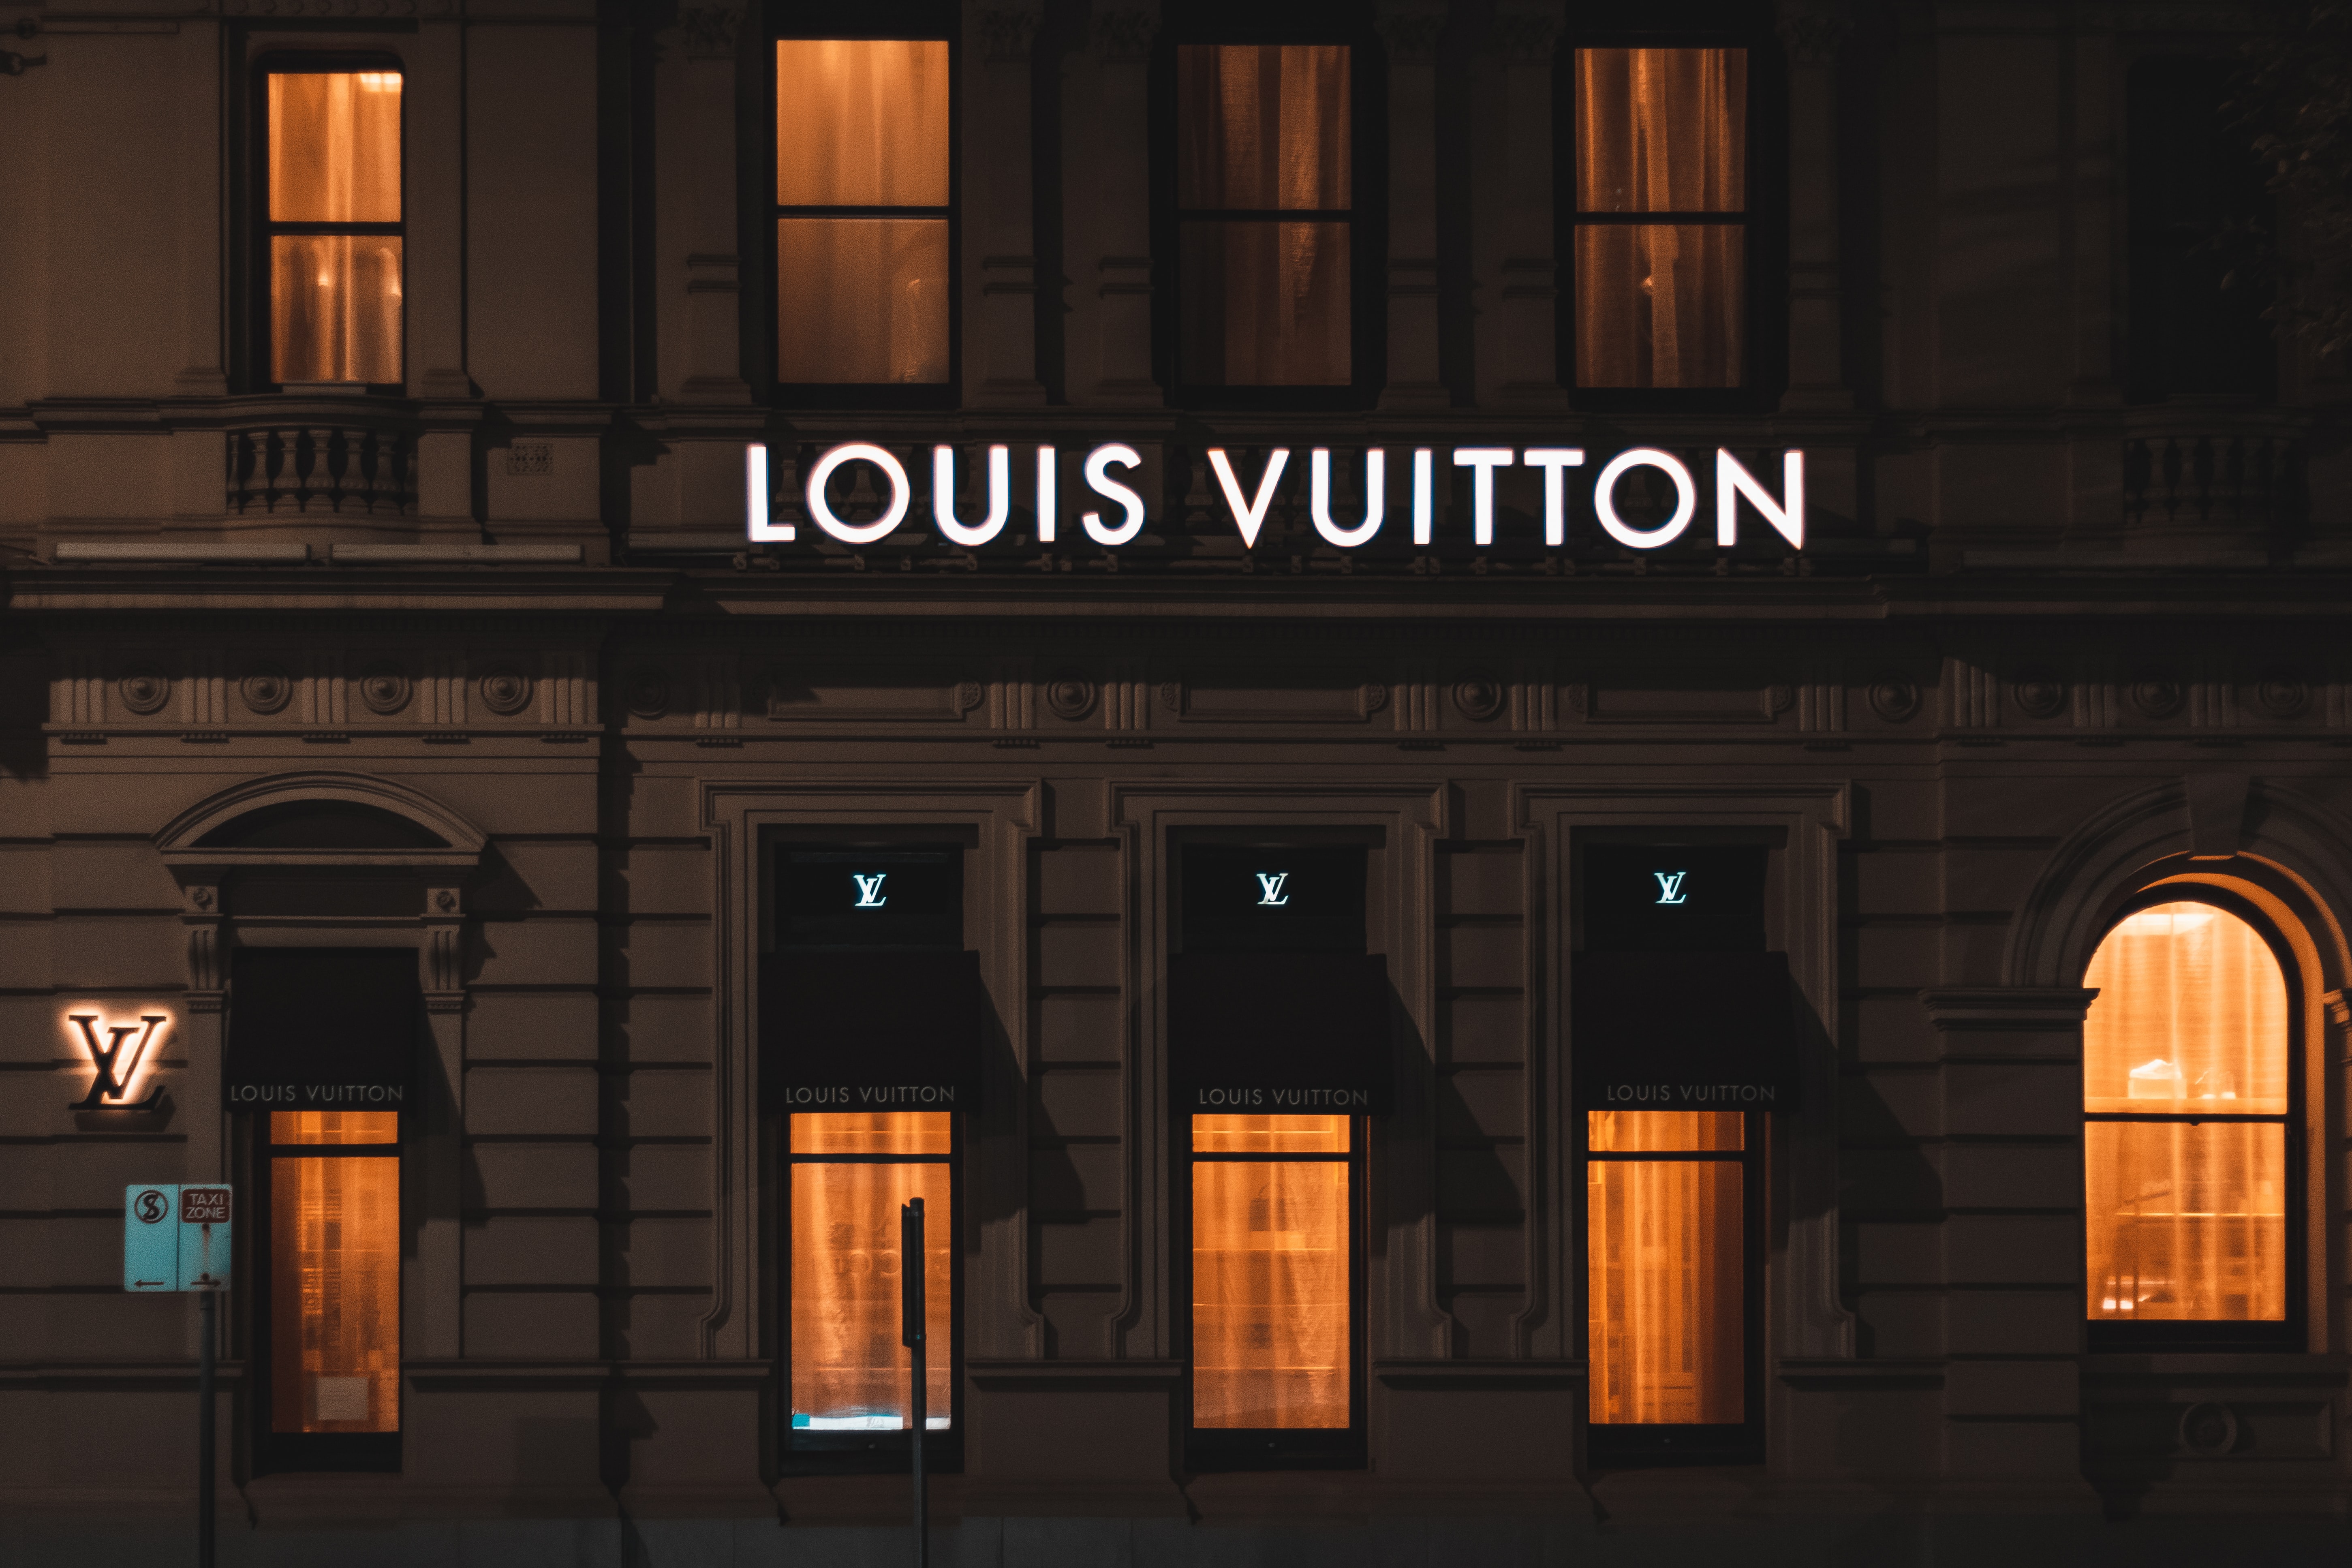 Case Study: Louis Vuitton